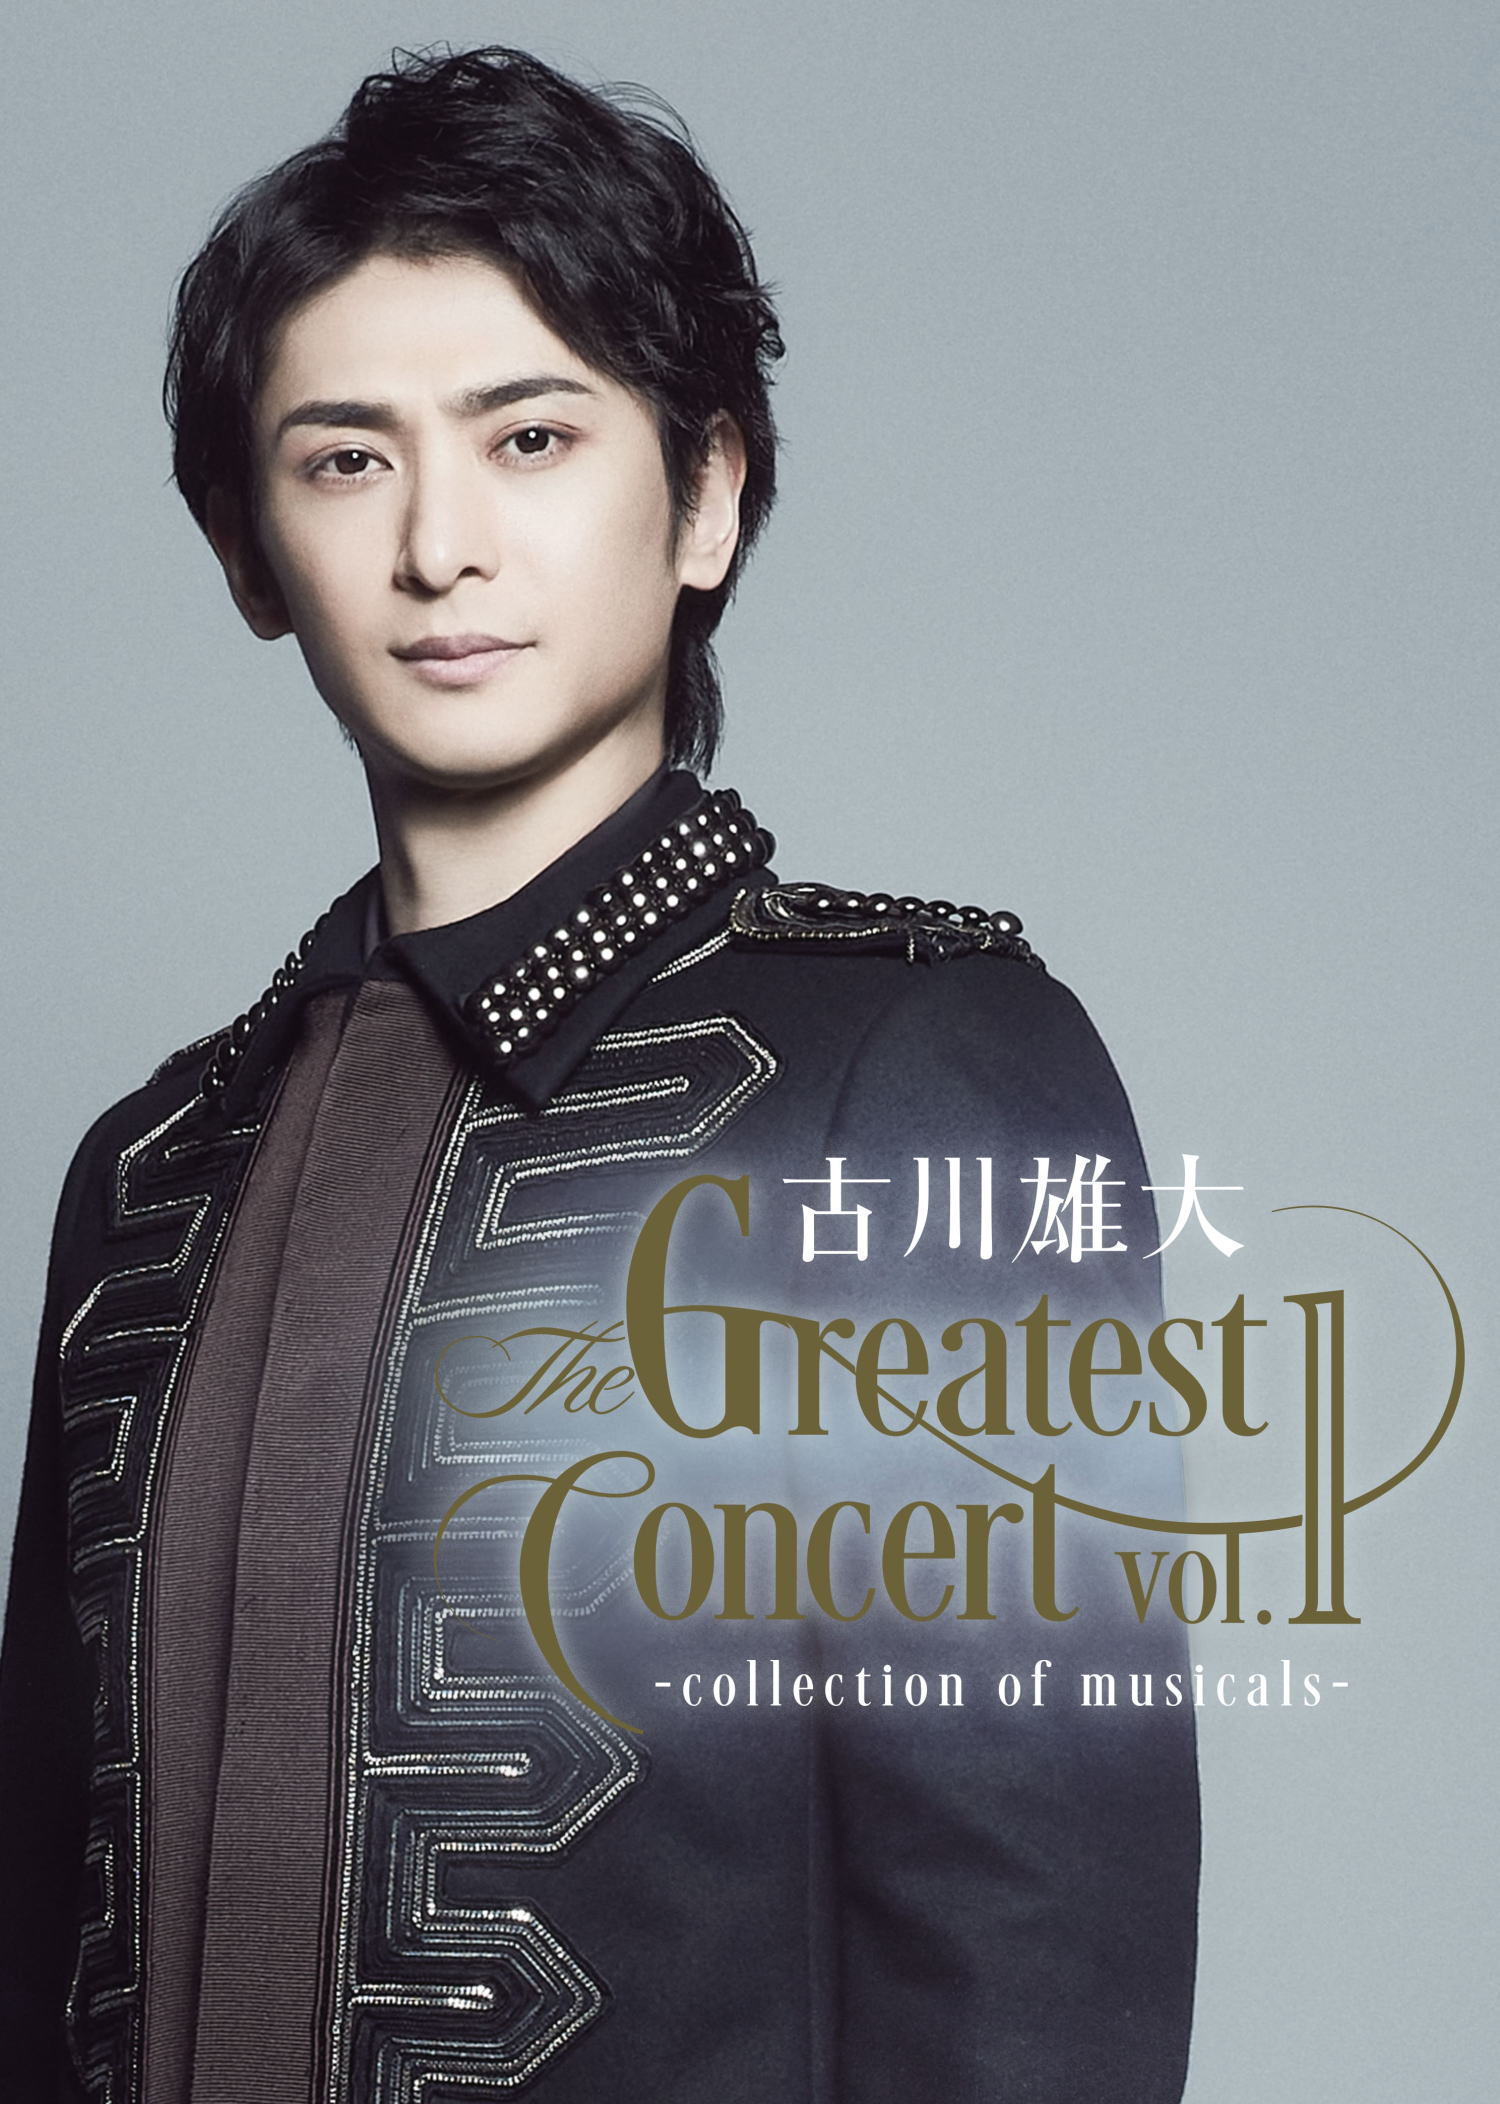 古川雄大 The Greatest Concert vol.1 -collection of musicals-